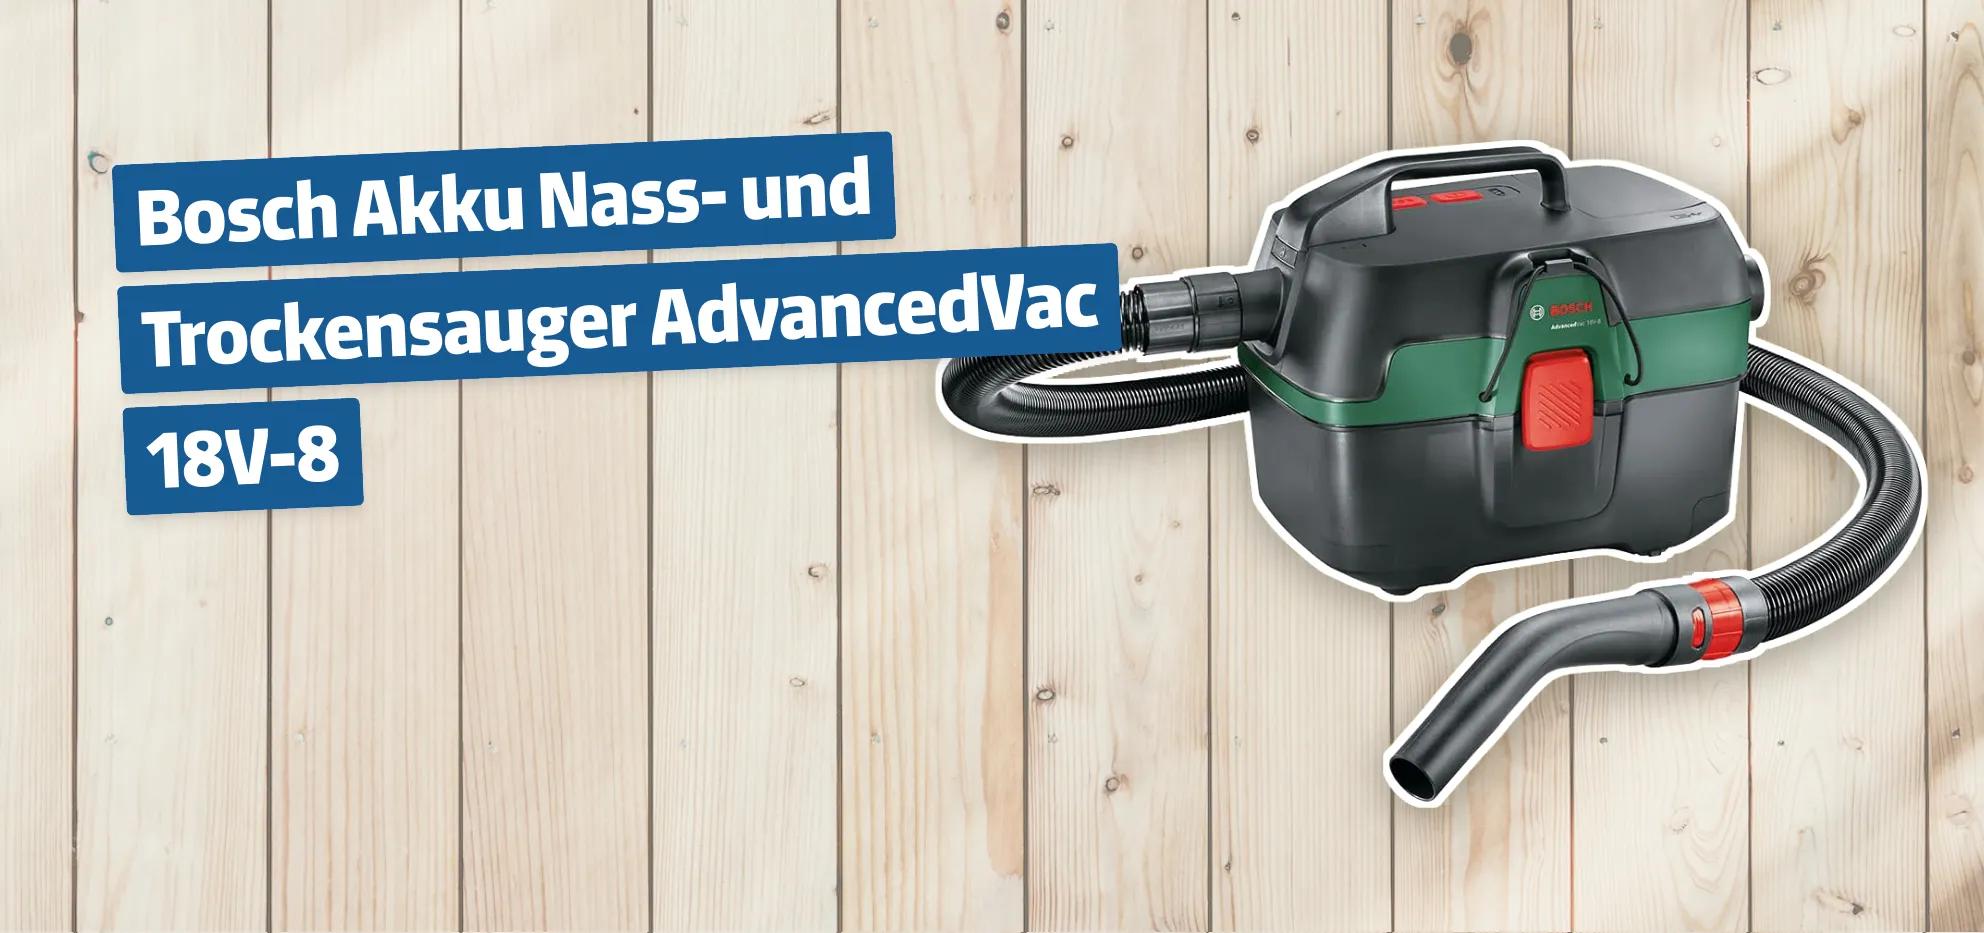 Bosch Akku Nass- und Trockensauger AdvancedVac 18V-8